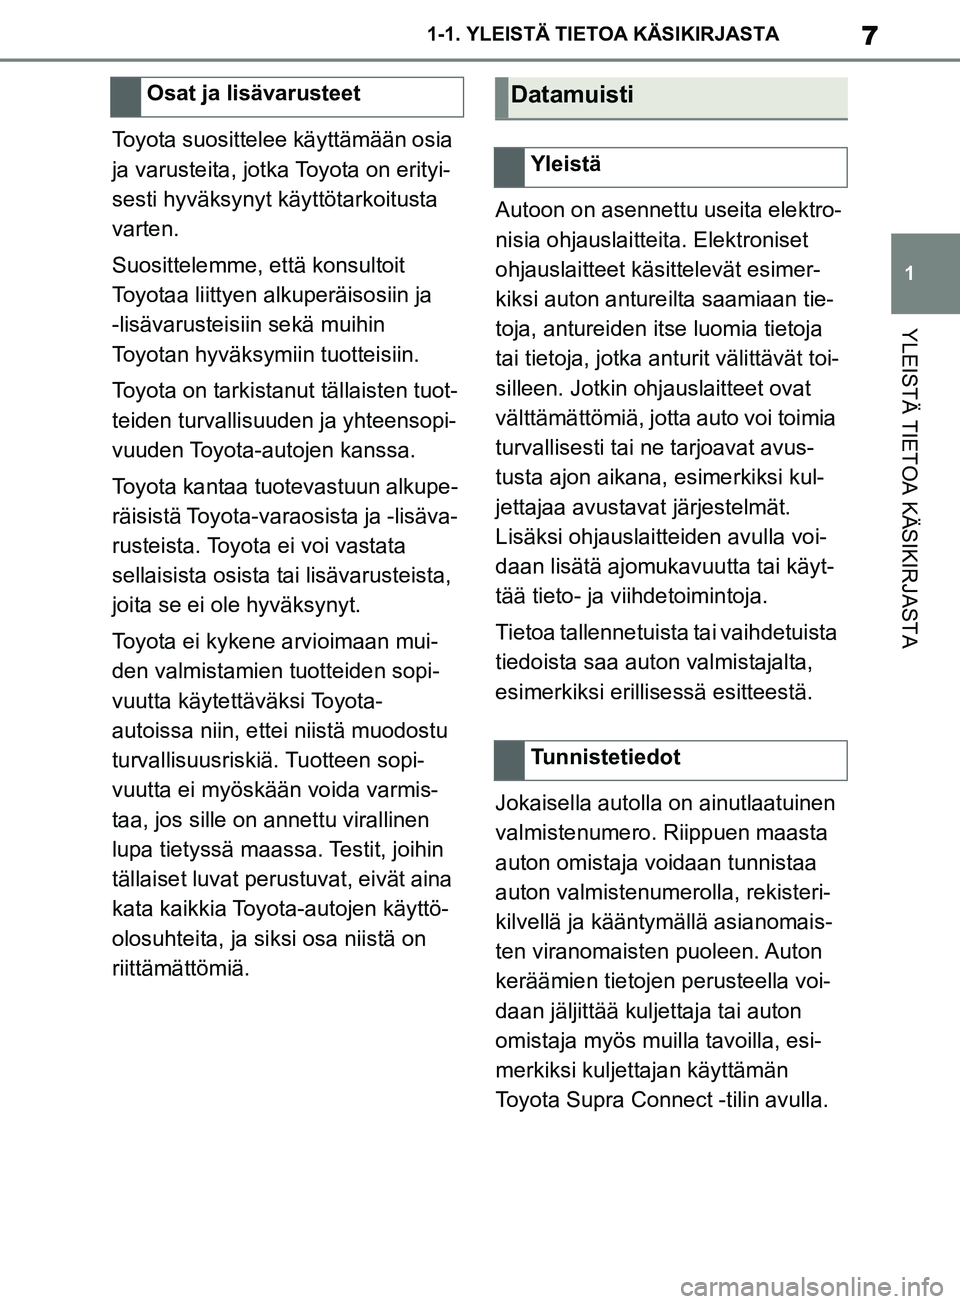 TOYOTA SUPRA 2019  Omistajan Käsikirja (in Finnish) 7
1
Supran omistajan käsikirja 1-1. YLEISTÄ TIETOA KÄSIKIRJASTA
YLEISTÄ TIETOA KÄSIKIRJASTA
Toyota suosittelee käyttämään osia 
ja varusteita, jotka Toyota on erityi-
sesti hyväksynyt käytt